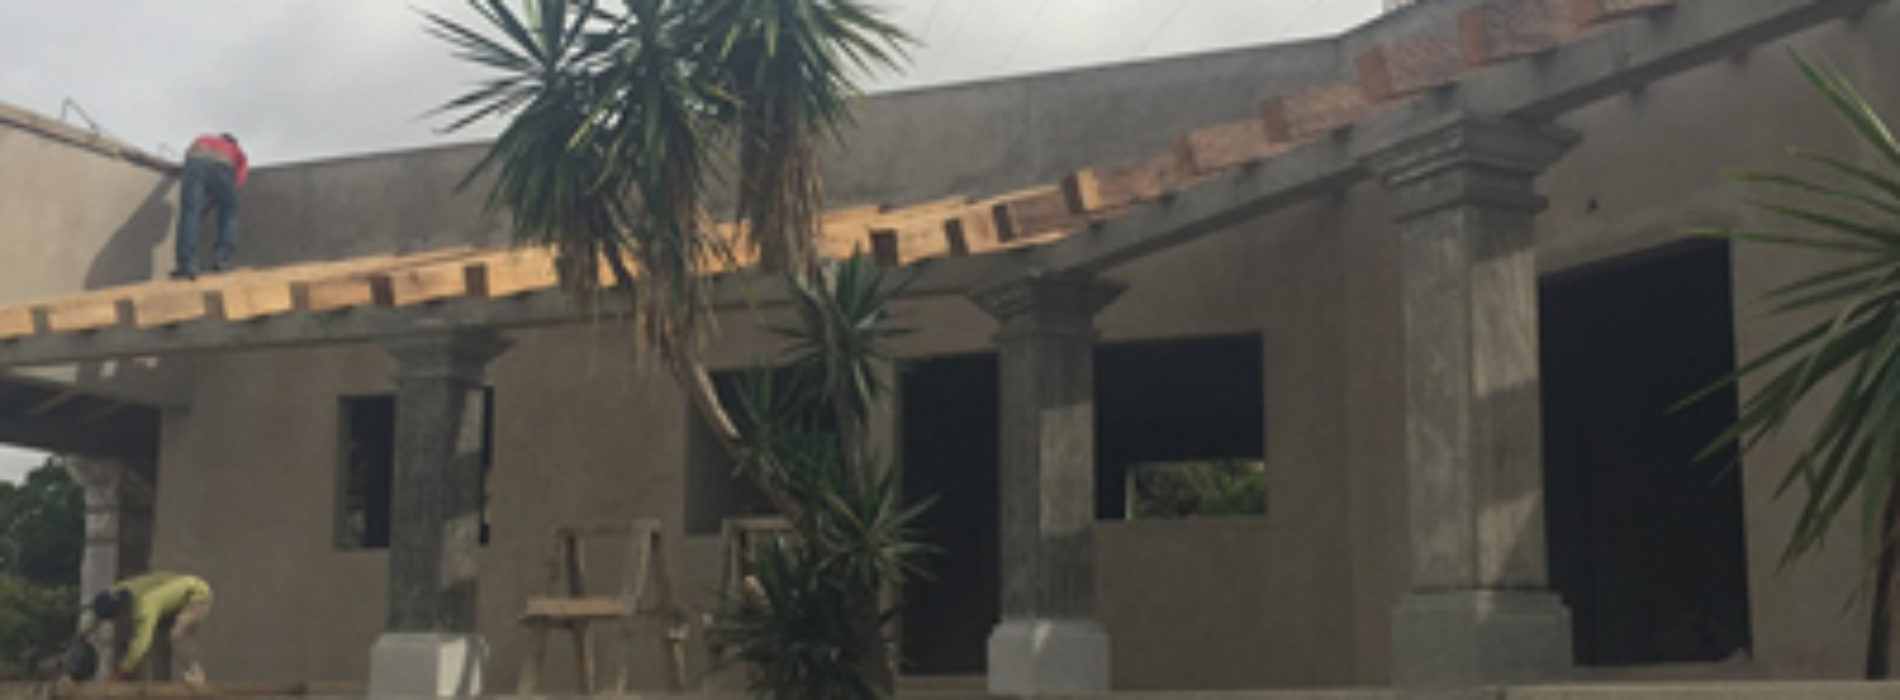 Gobierno del Estado construye casa comunal en San Agustín Etla  